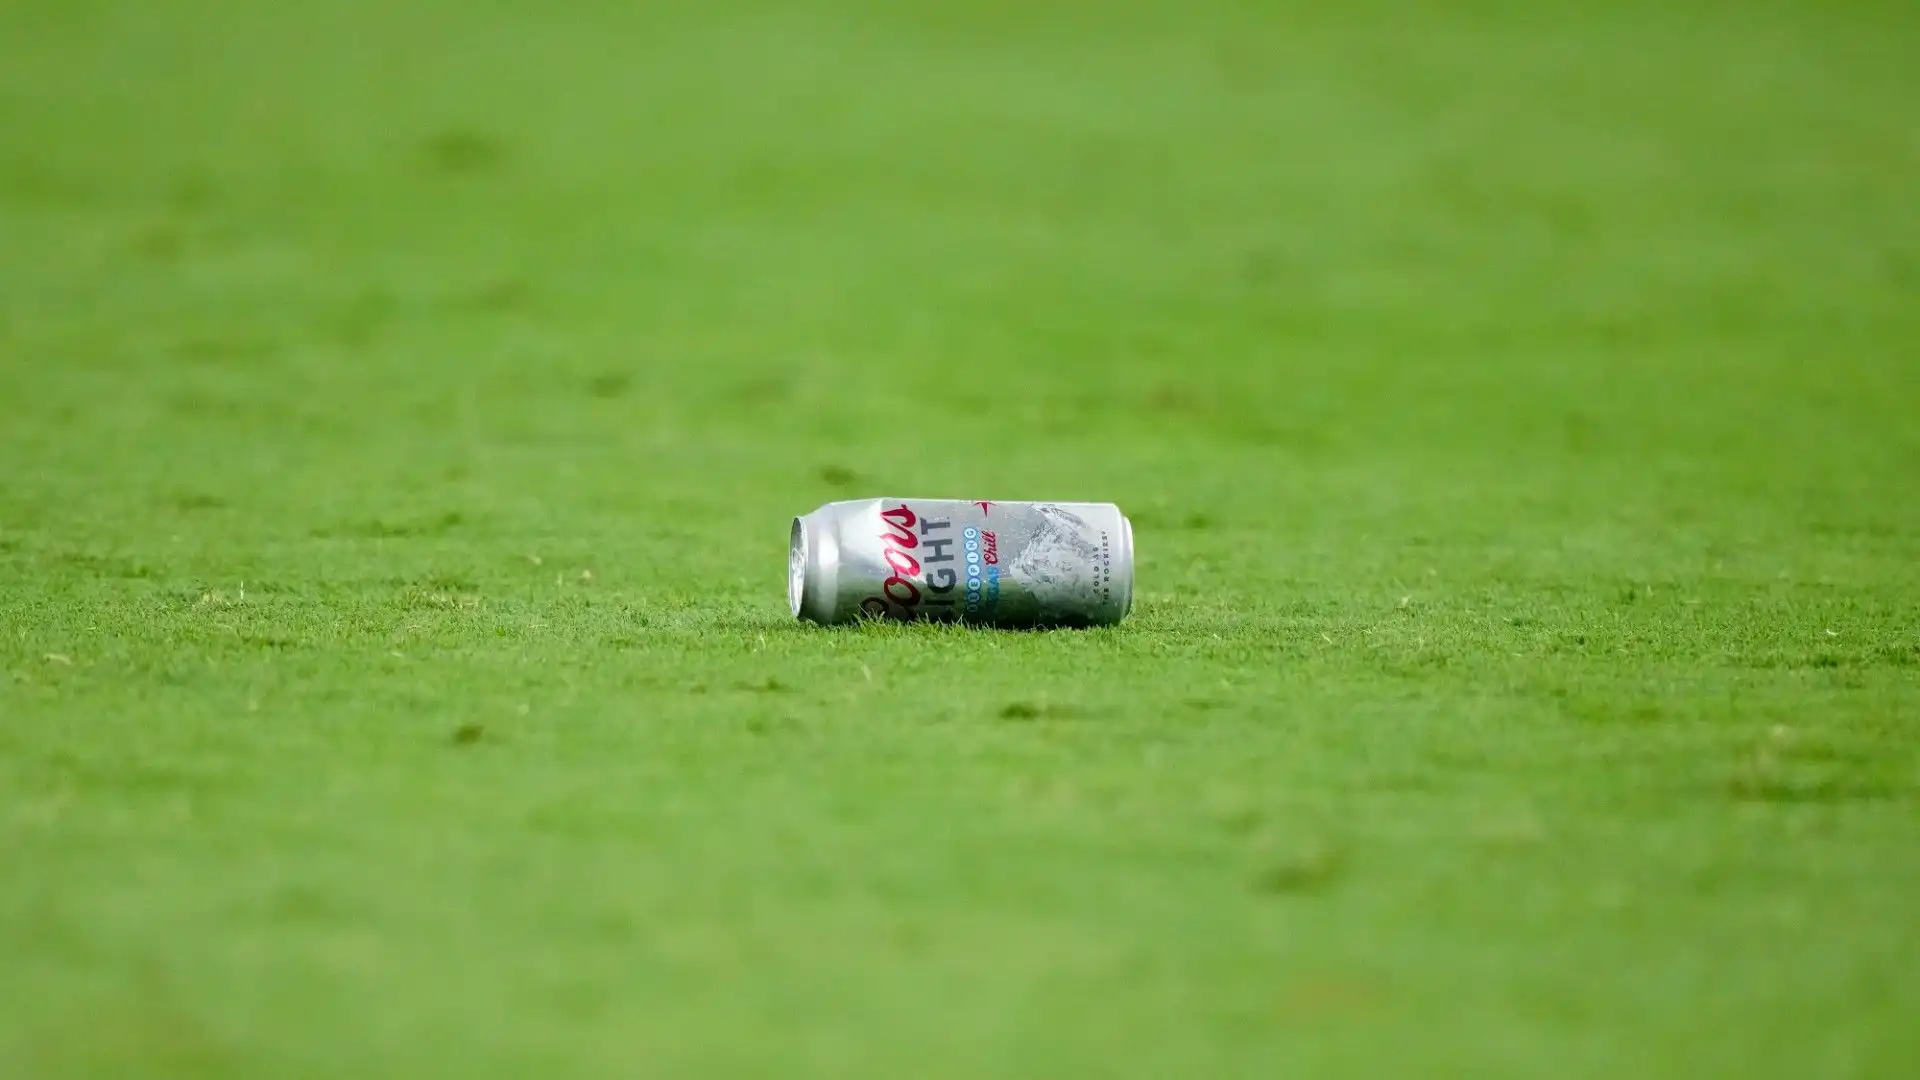 Un tifoso ha anche lanciato una lattina semipiena di birra in campo. Fortunatamente non ha colpito nessuno. Un gesto insensato